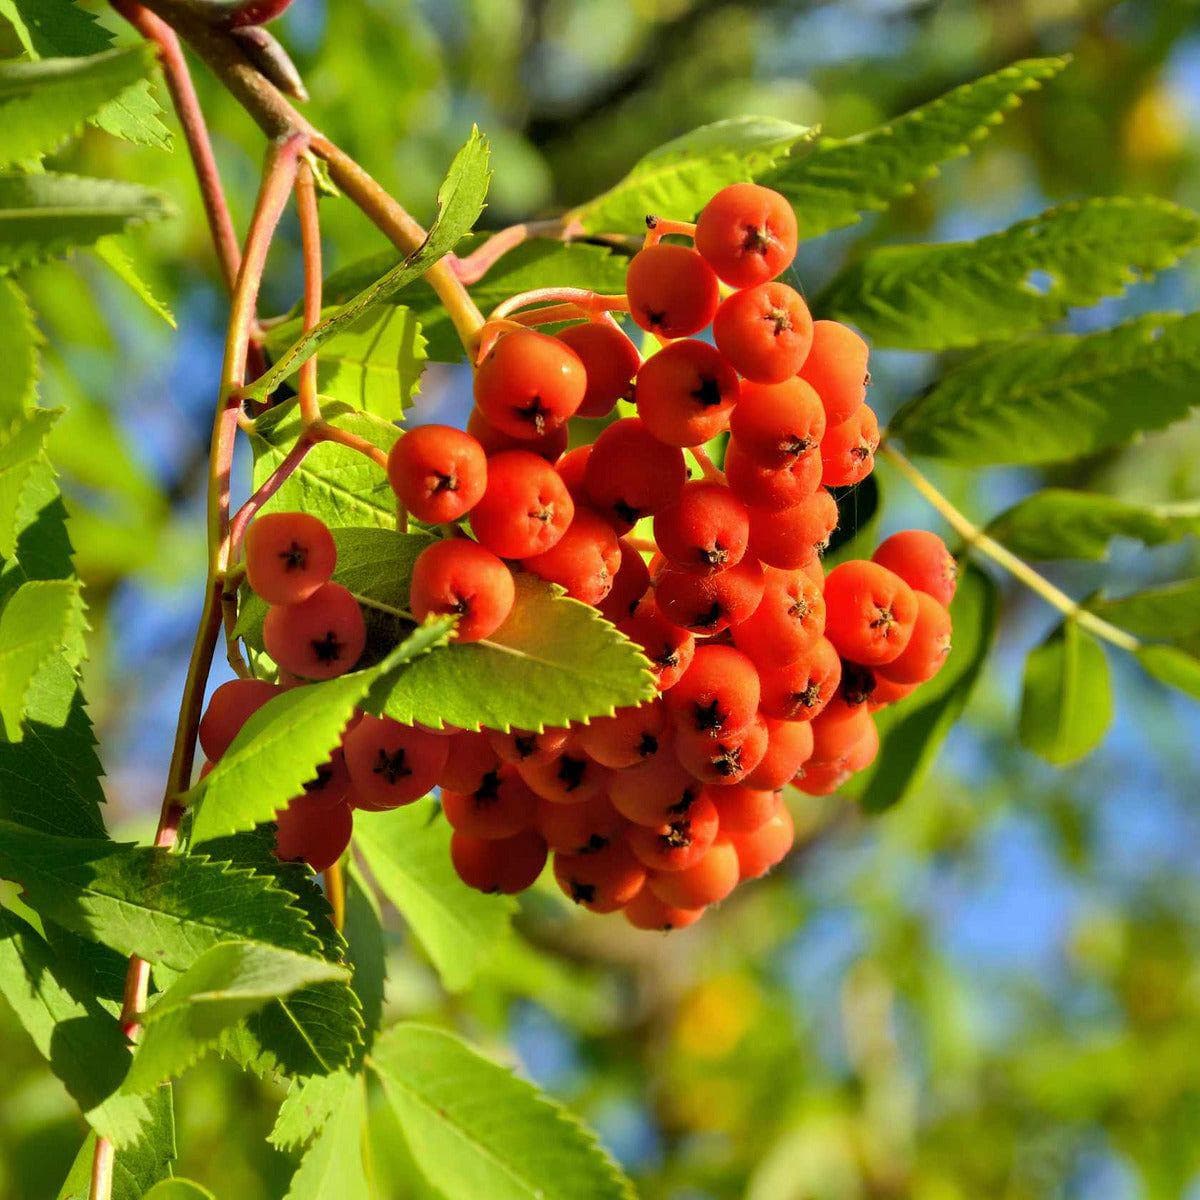 ackerbaum Fruchteberesche - Rosina kaufen